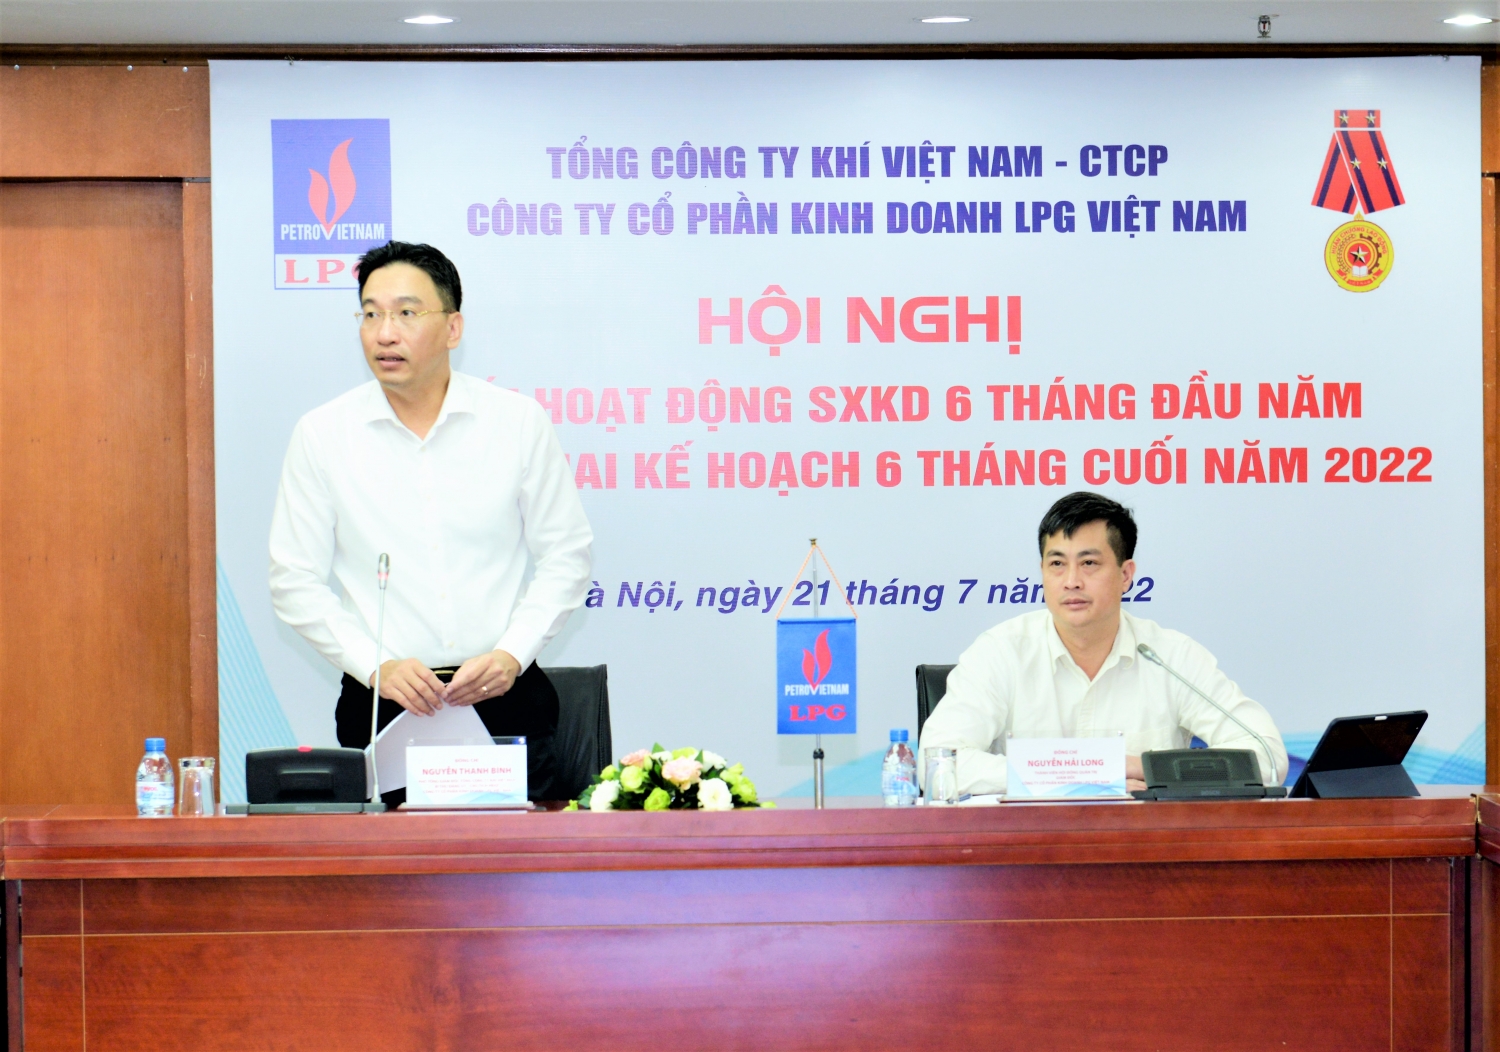 Ông Nguyễn Thanh Bình và ông Nguyễn Hải Long chủ trì Hội nghị